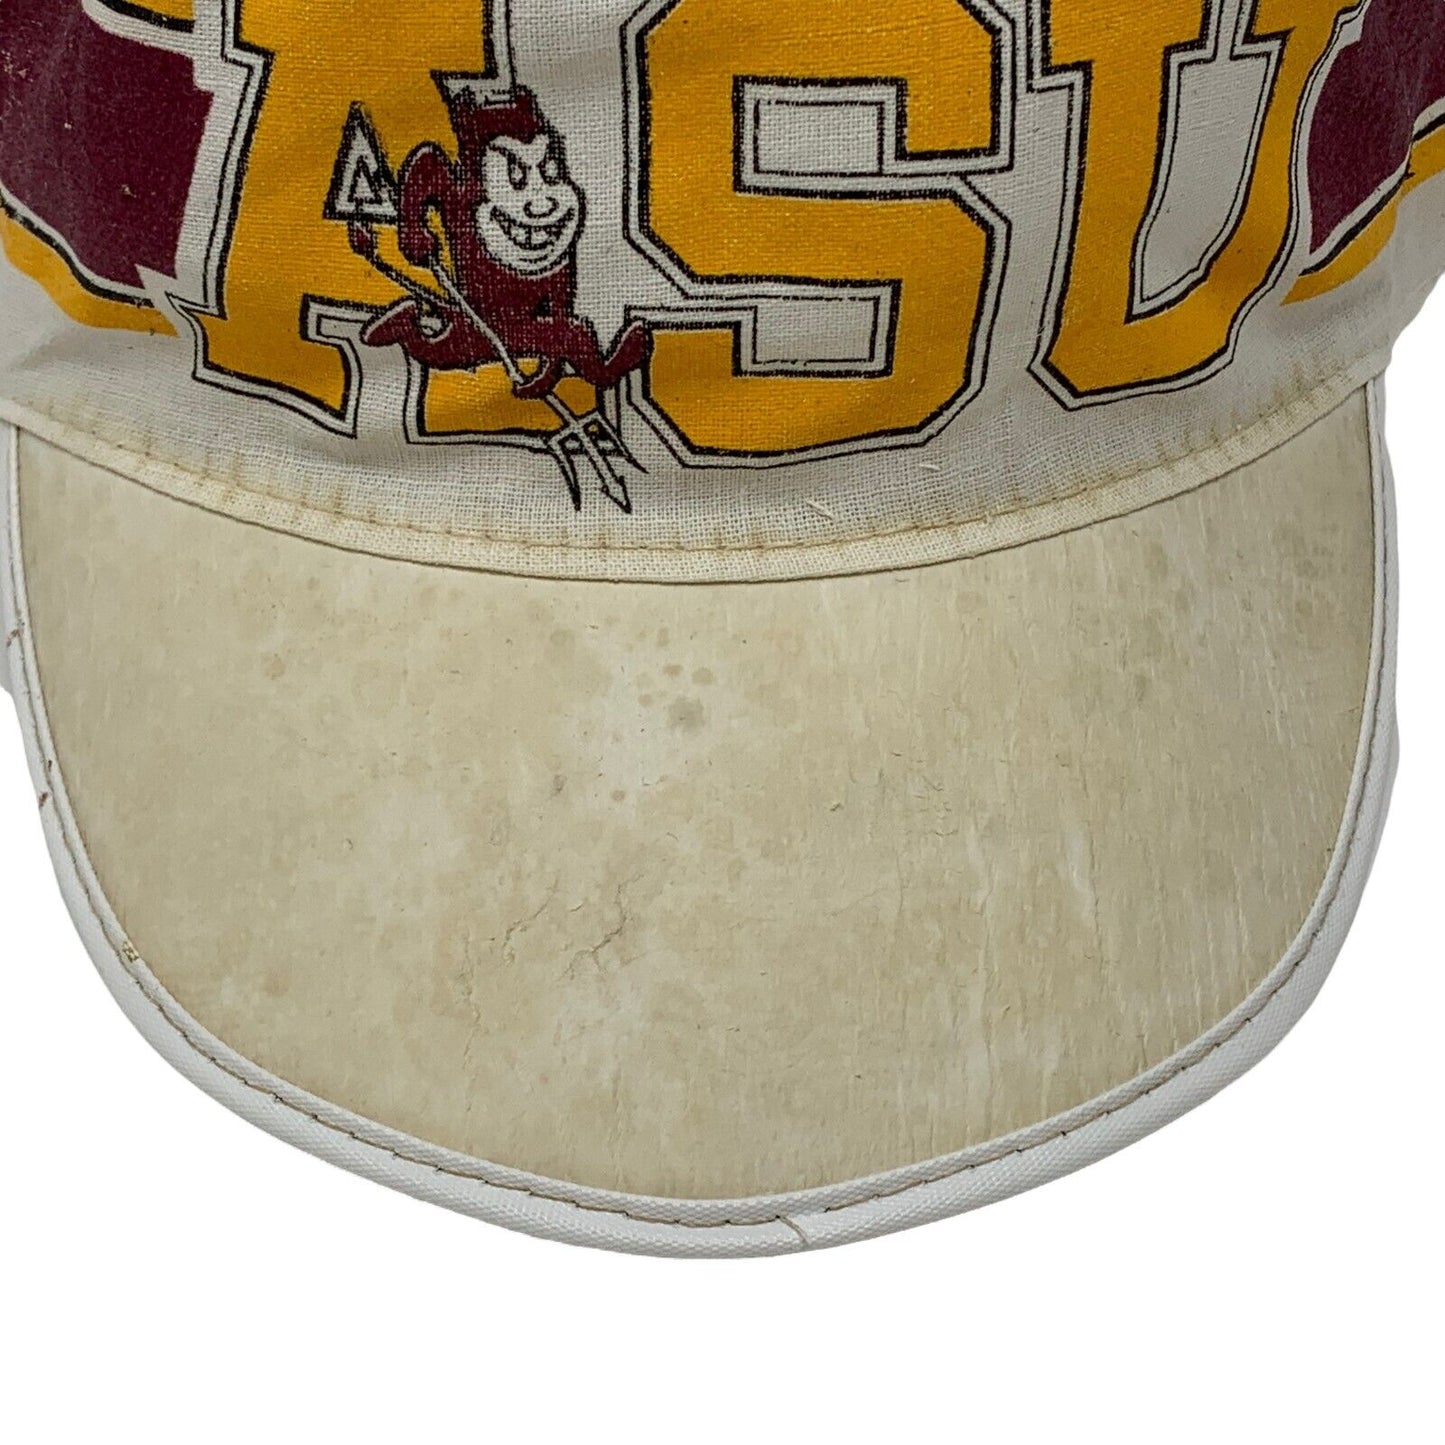 ASU 亚利桑那州立大学画家帽子复古 80 年代太阳魔鬼棒球帽